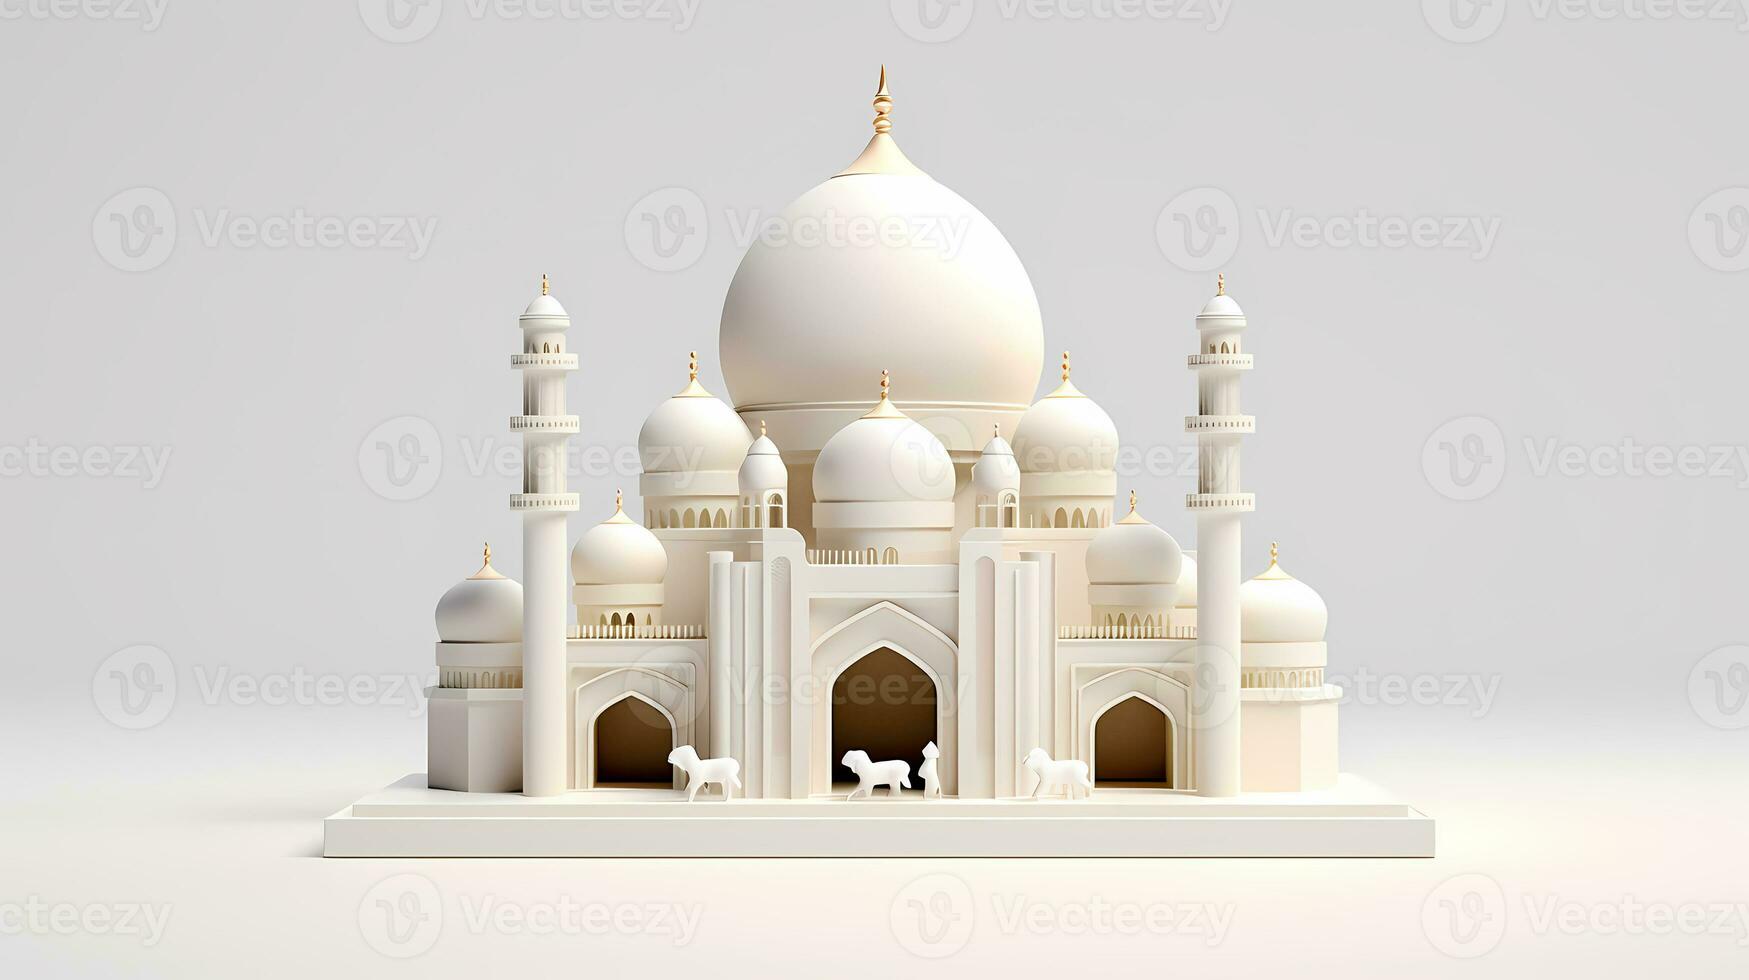 Eid Al Adha Banner Design Illustration. Islamic and Arabic Background for the Muslim Community Festival. Muslim Holiday. 3D Modern Islamic suitable for Ramadan, Hari Raya, Eid al-Adha. Generative AI photo